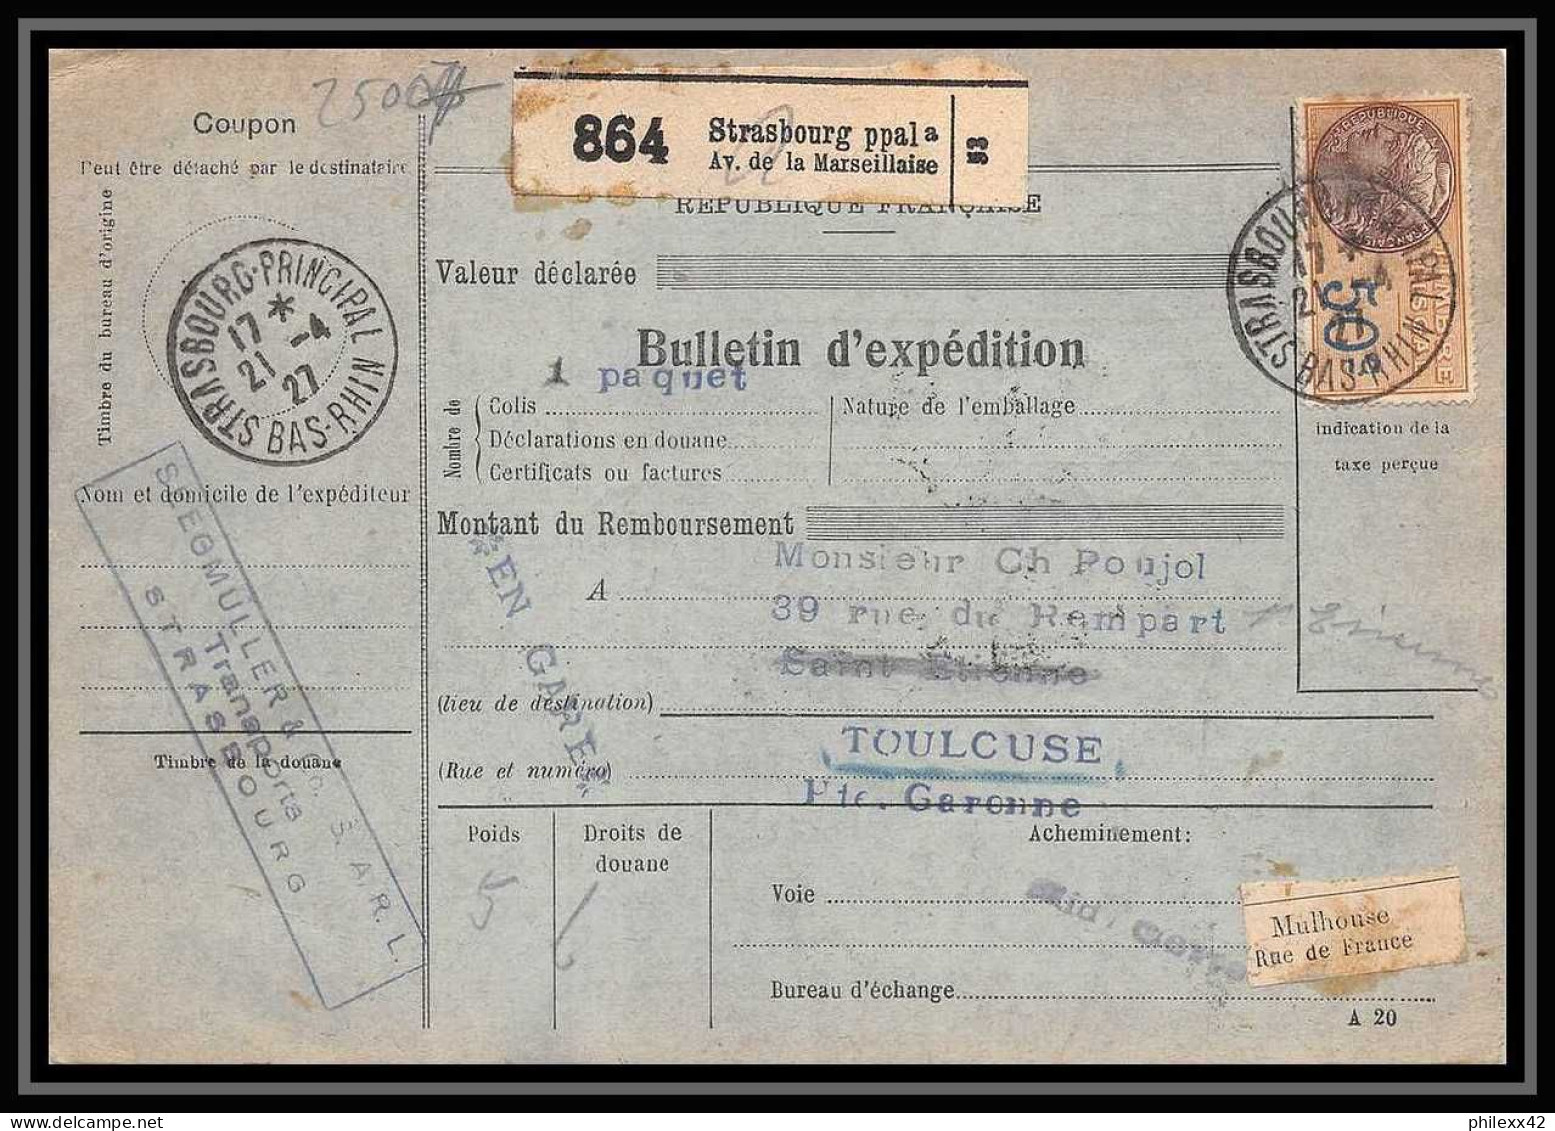 25007 Bulletin D'expédition France Colis Postaux Fiscal Haut Rhin 1927 Strasbourg Semeuse Merson 145 EN GARE - Covers & Documents